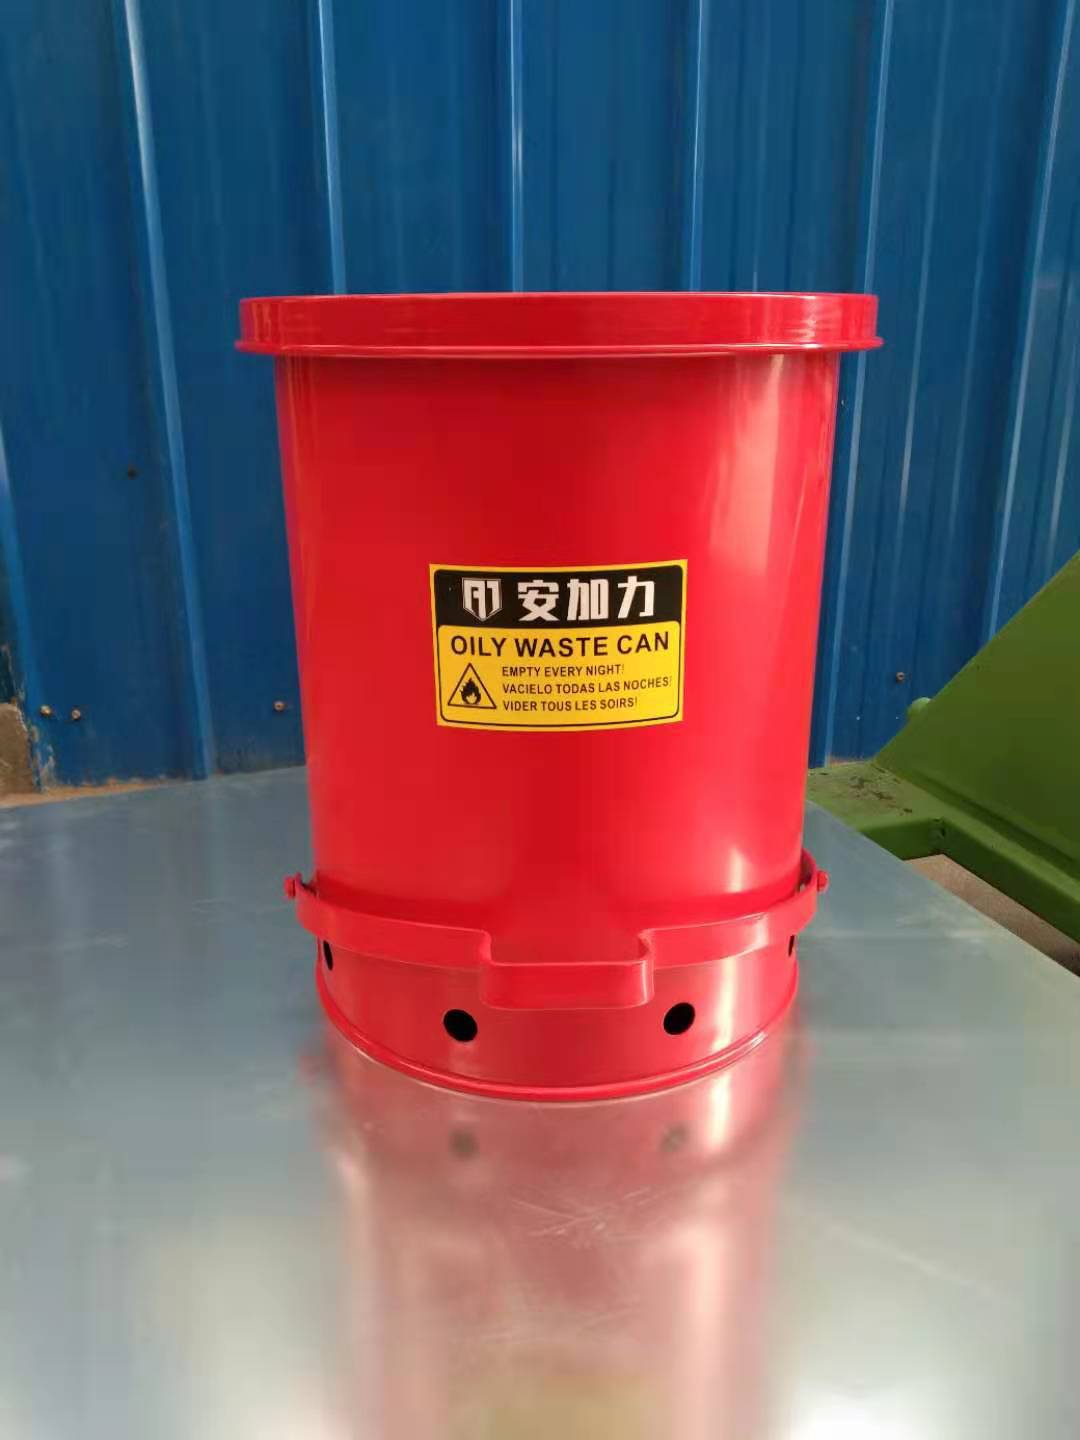 厂家批发油污废品安全桶收纳桶防火垃圾桶生物废弃物垃圾桶安全桶